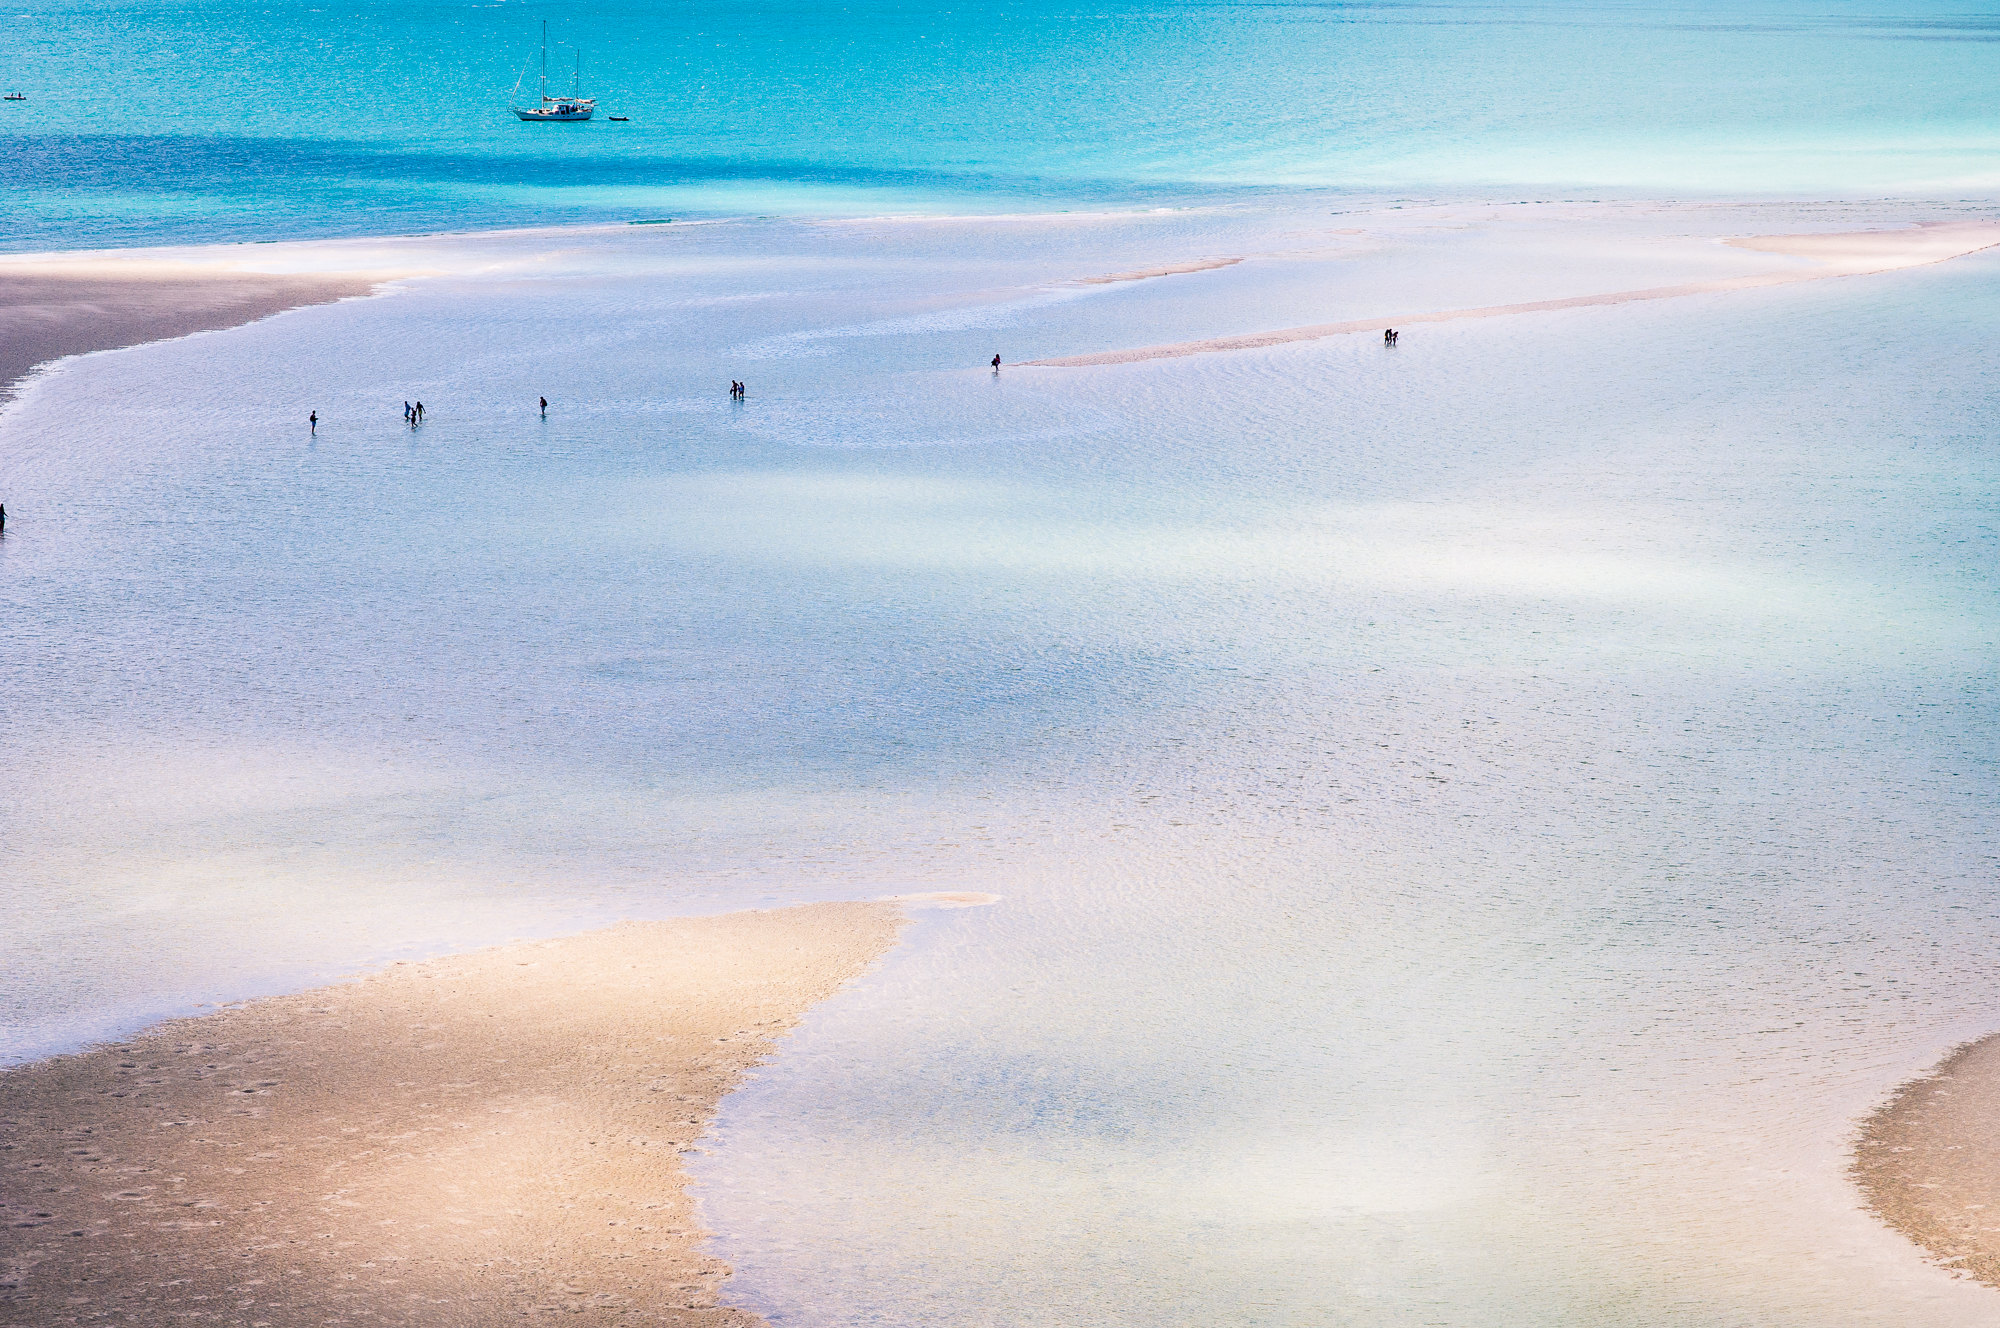 全球最开放岛屿：坐拥50处裸体海滩，靠海滩一年吸引1600万人 - 知乎